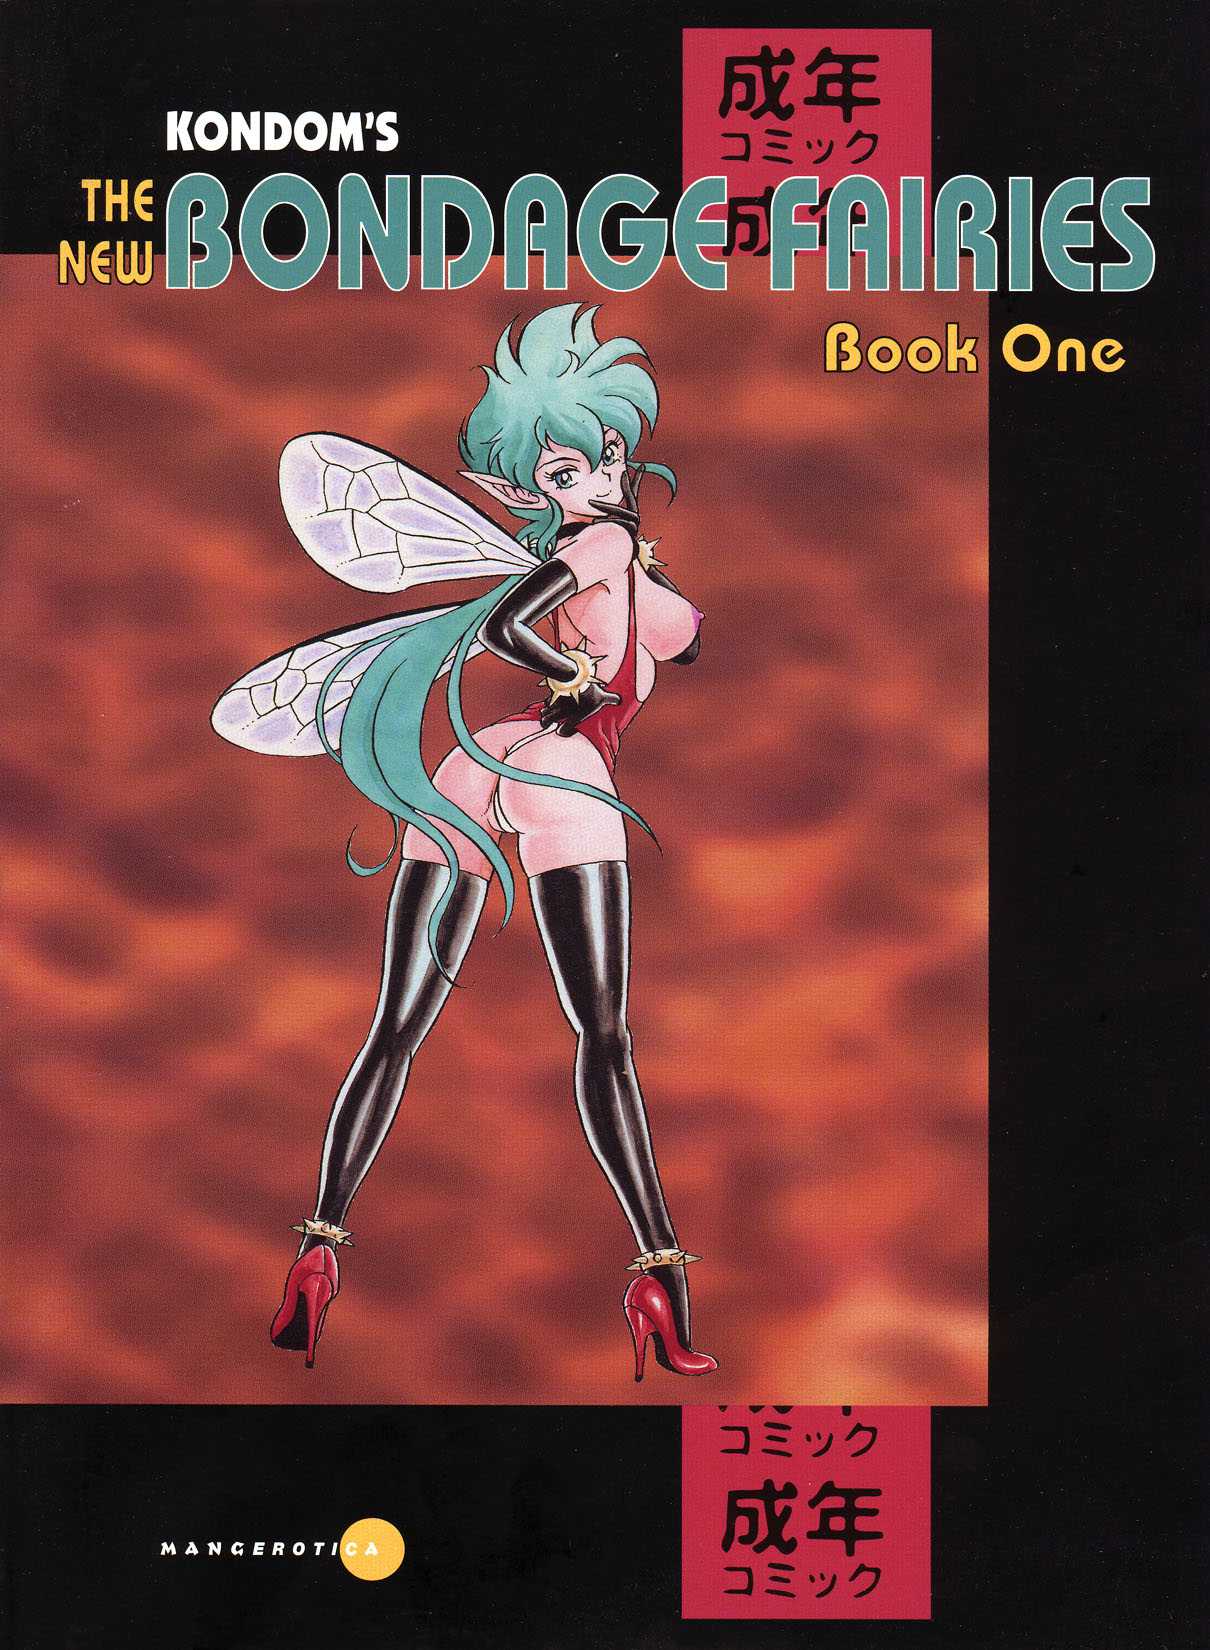 Belt reccomend Bondage fairy free anime and manga